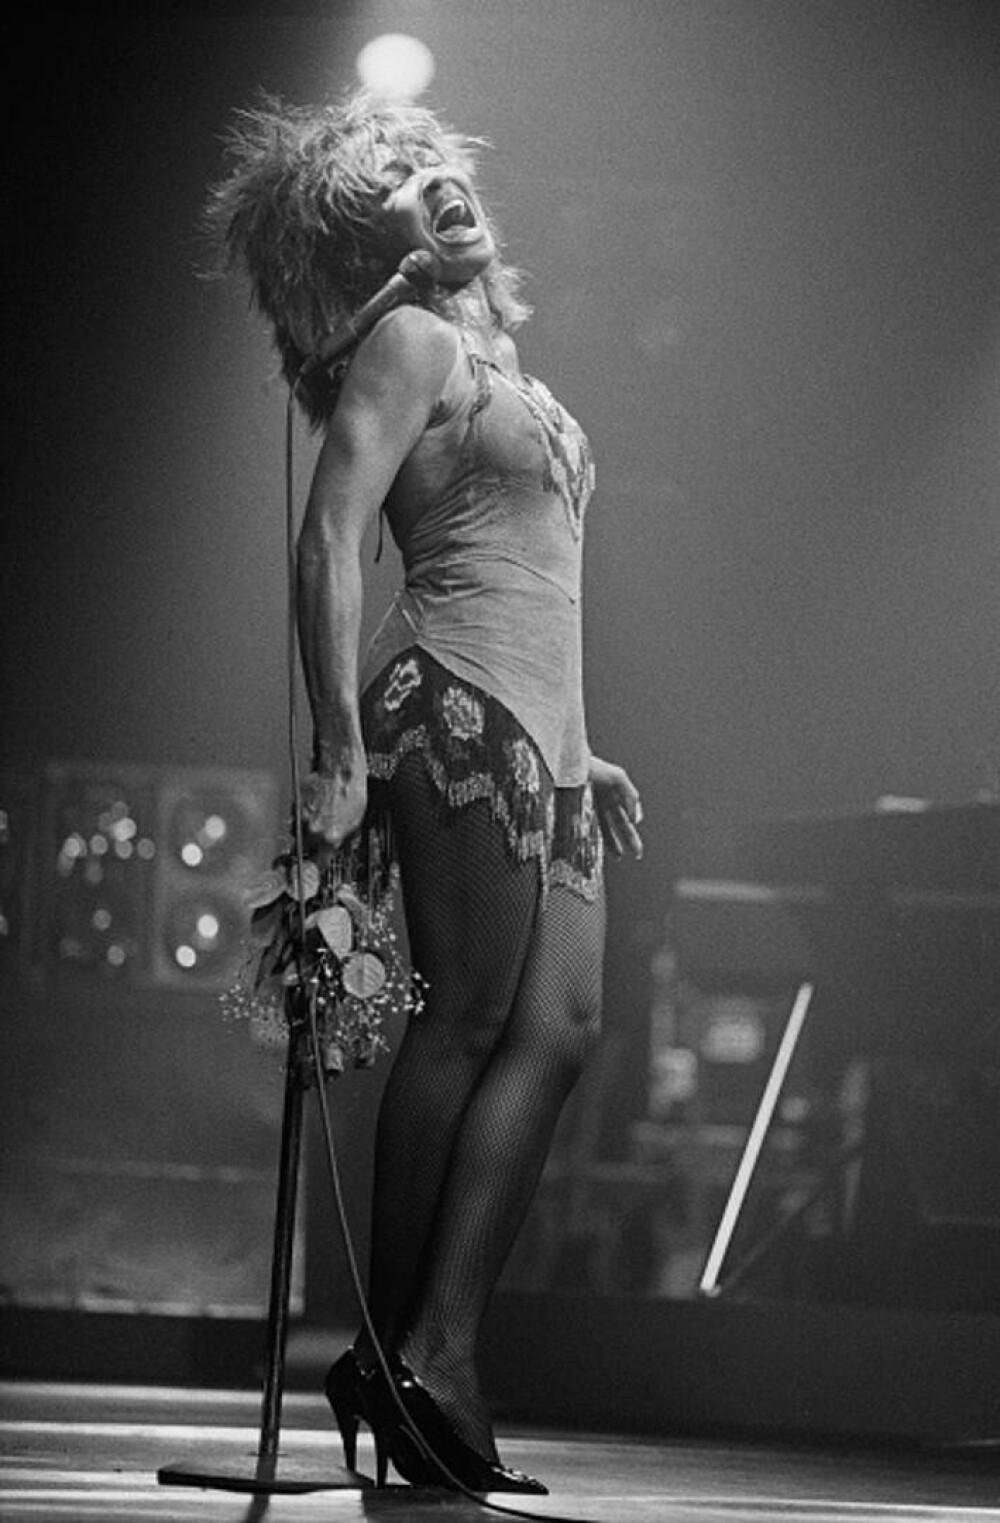 Tina Turner - viața tragică a unui artist legendar. Cântăreața a luat în calcul sinuciderea asistată - Imaginea 3